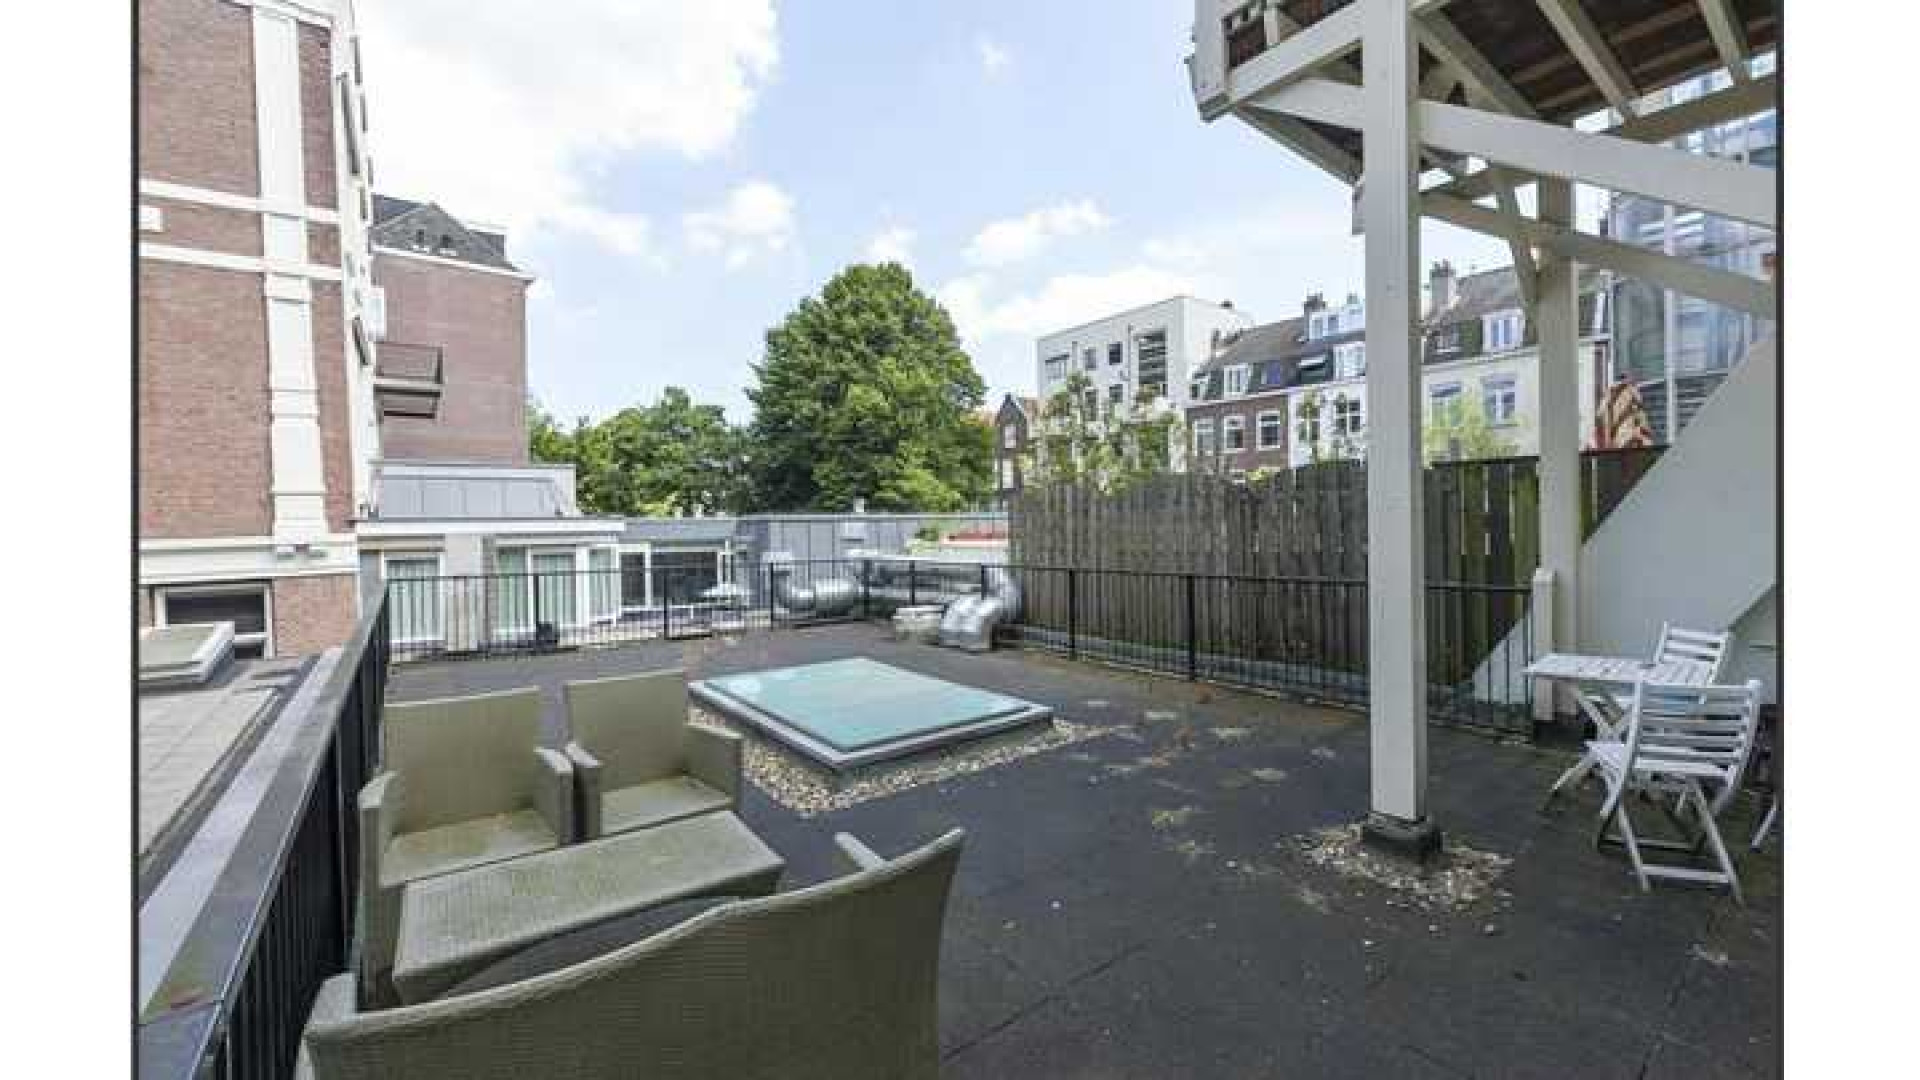 Trijnte Oosterhuis en haar ex zetten hun luxe Amsterdamse appartement te koop. Zie foto's